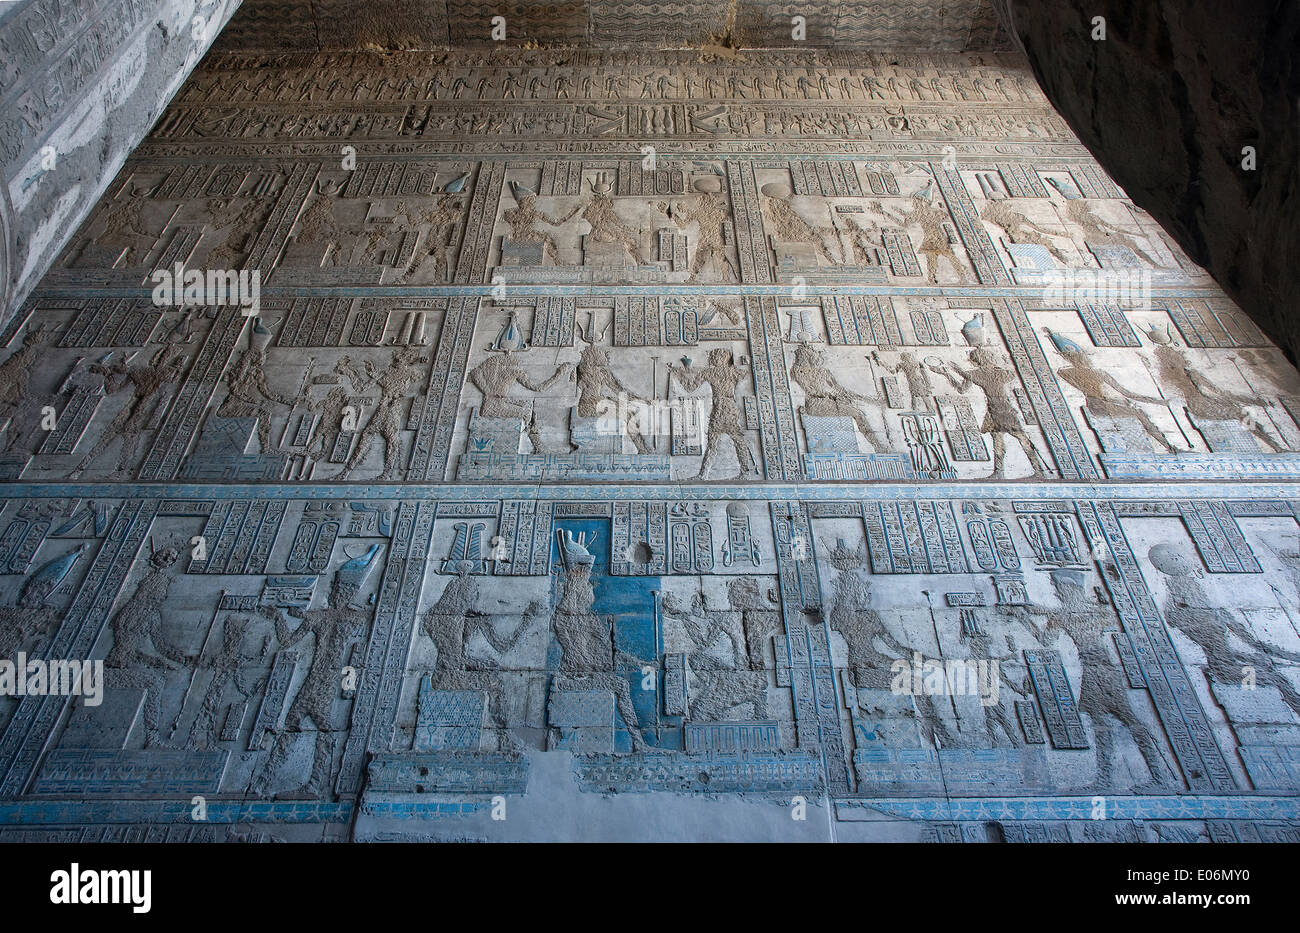 L'Egitto,Dendera,tempio tolemaico della dea Hathor.Vista su un muro con intagli cancellati come 'Damnatio memoriae" Foto Stock